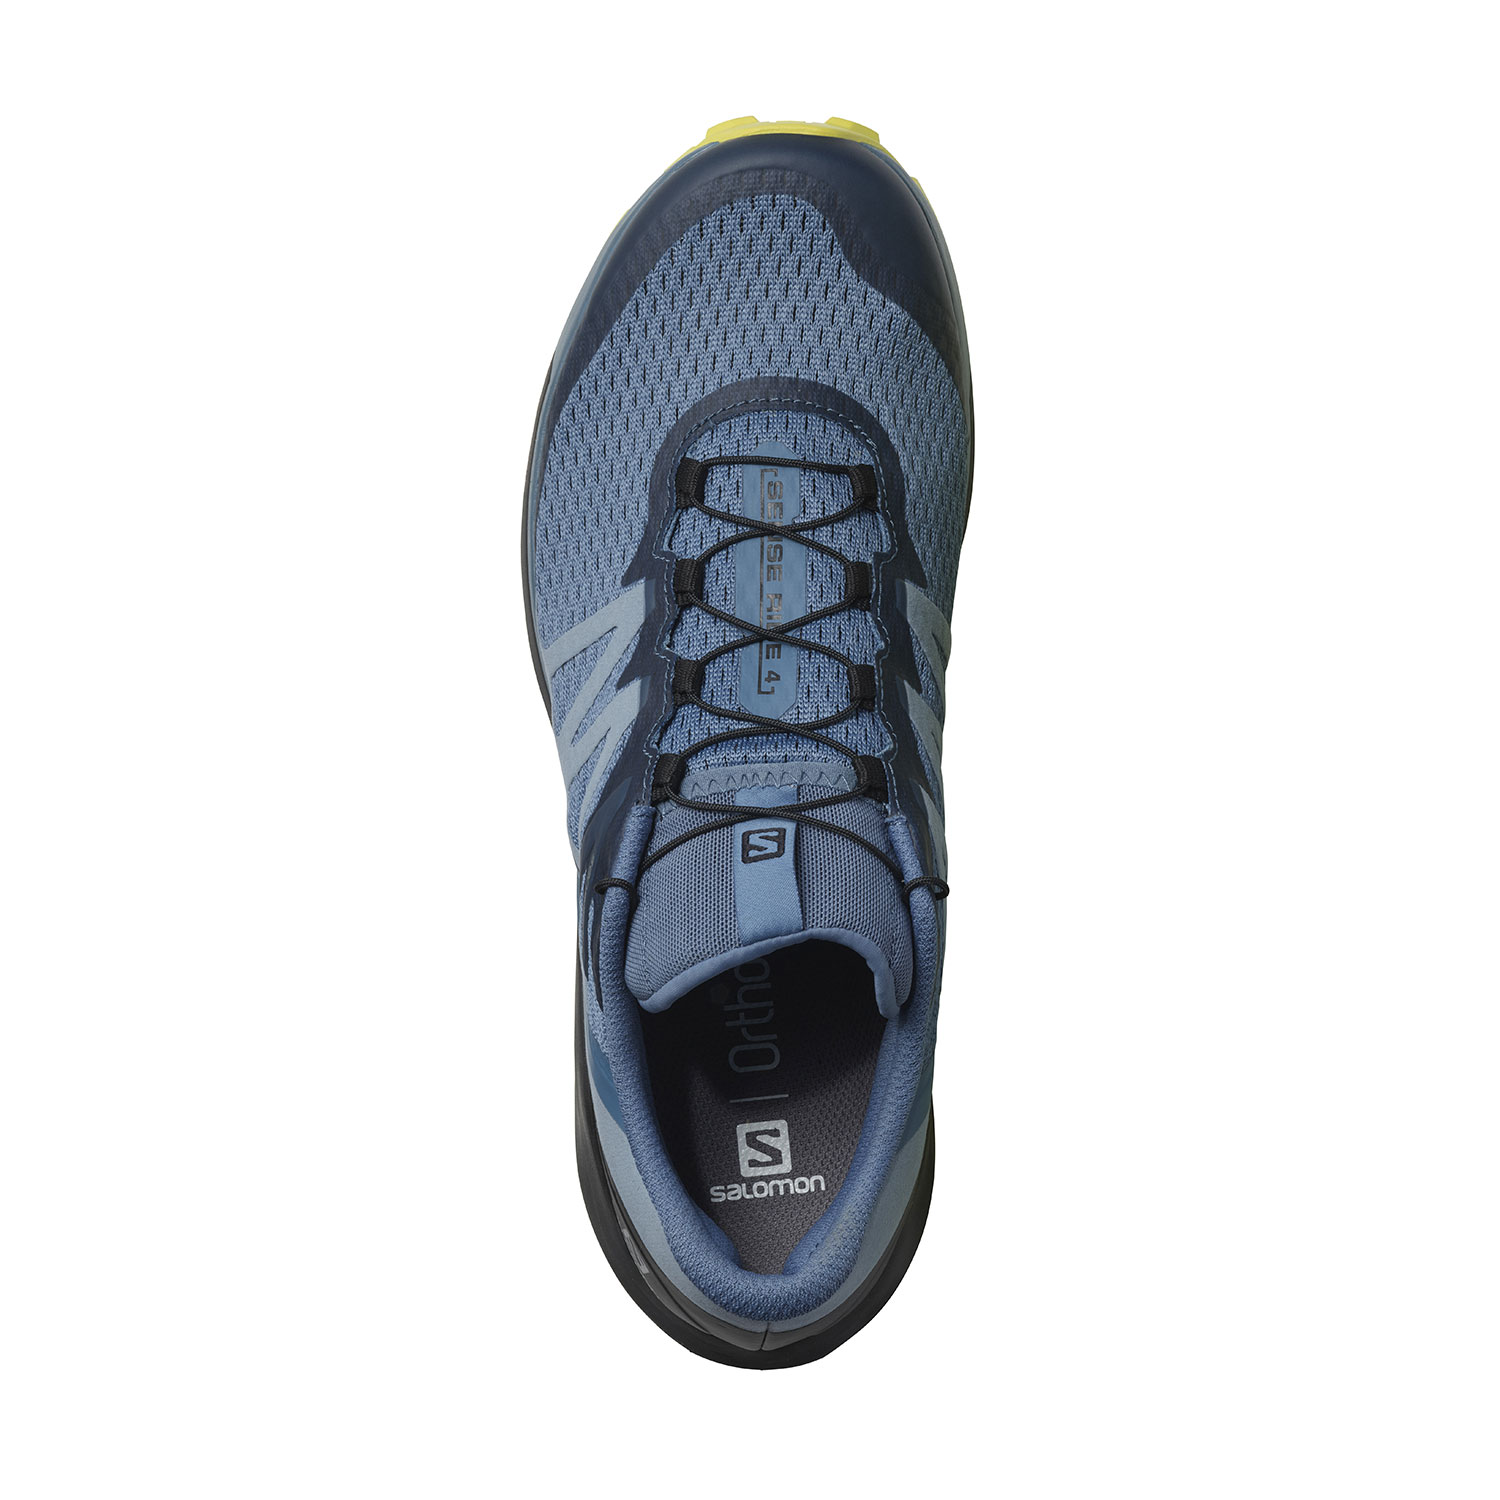 Salomon Sense Ride 4 Men's Trail Running Shoes - Copen Blue